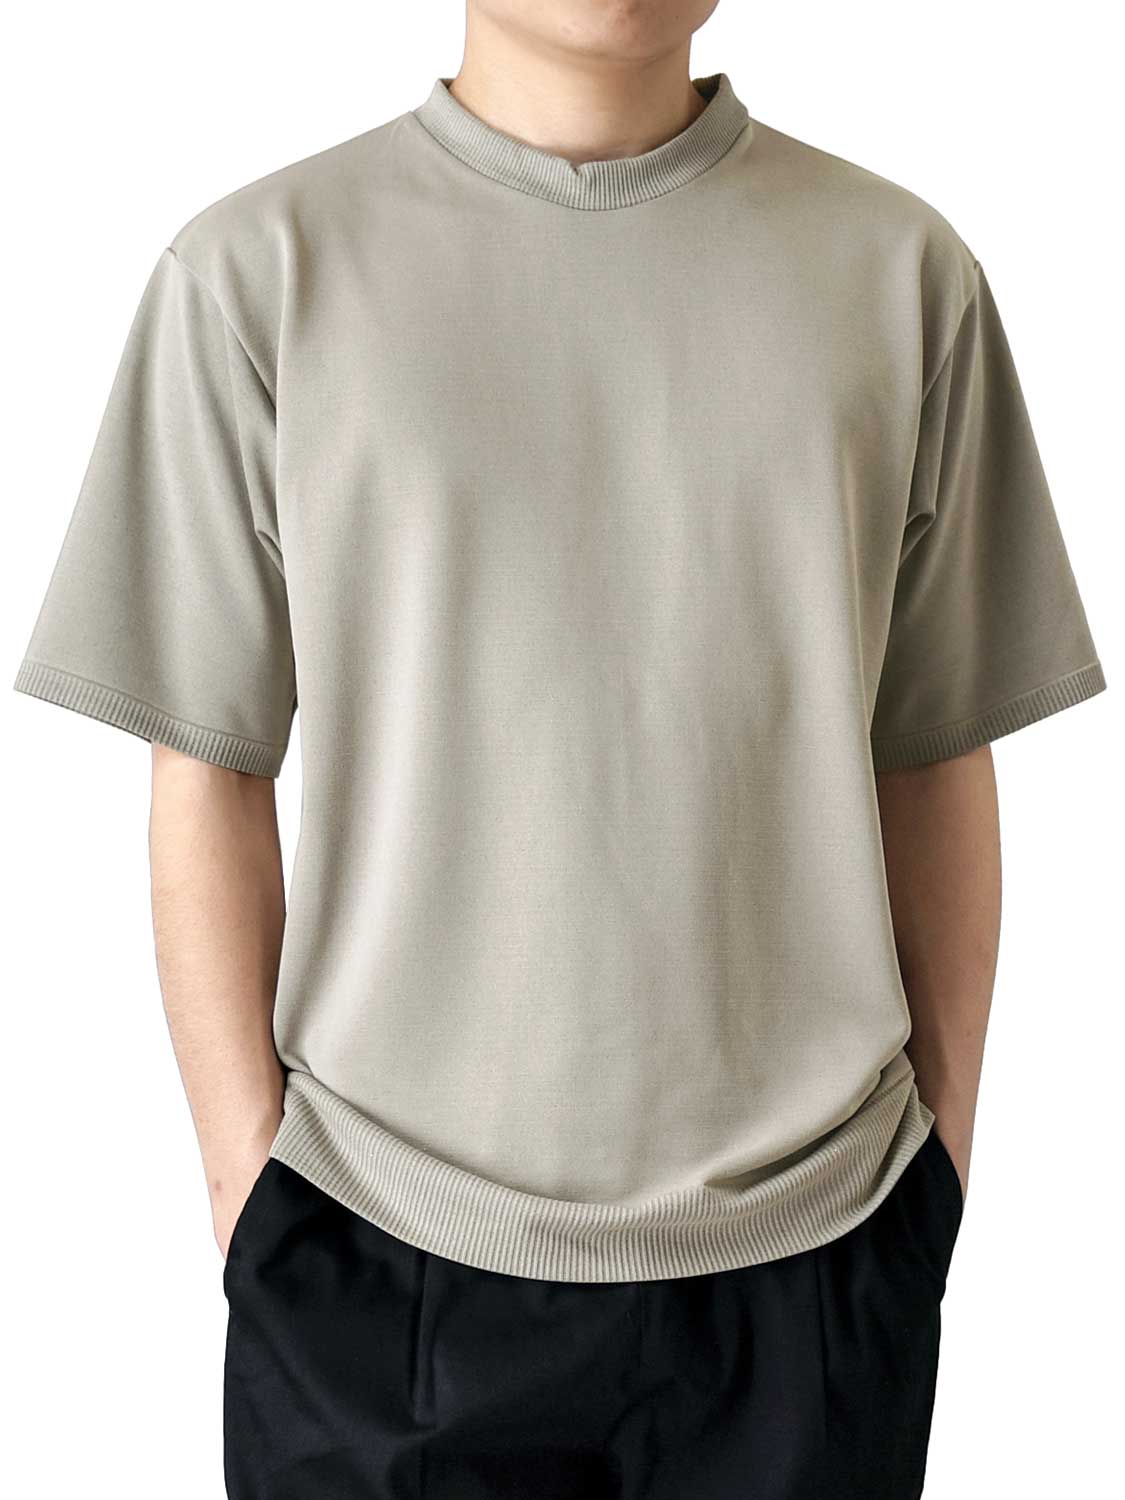 カットソー 半袖 メンズ 接触冷感 ドライ 吸汗速乾 ストレッチ Tシャツ 送料無料 通販Y